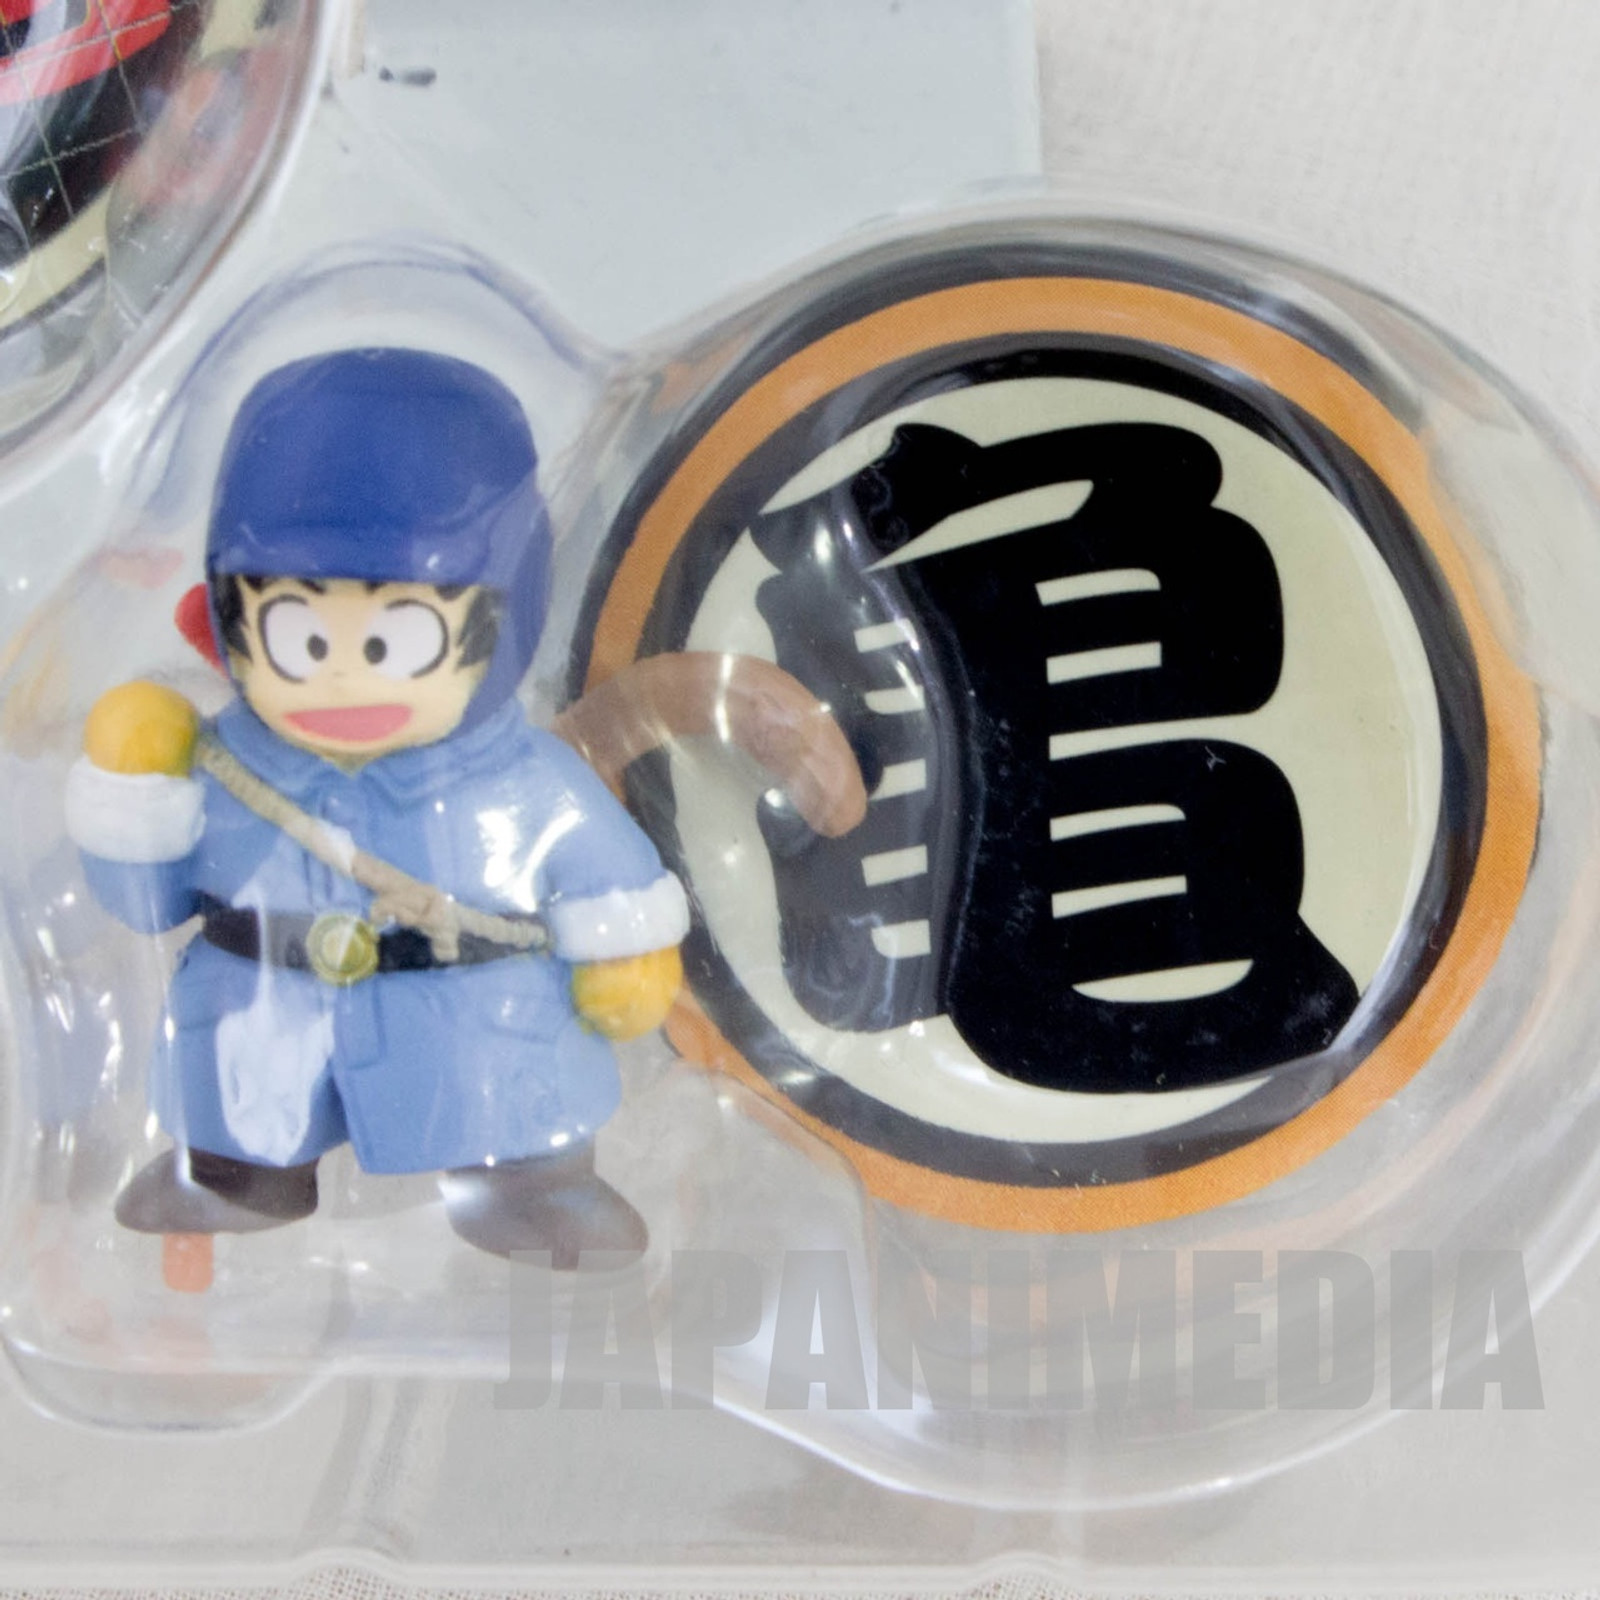 Dragon Ball Z Collection Box 3 Mini Figure Set Unifive  JAPAN ANIME MANGA JUMP